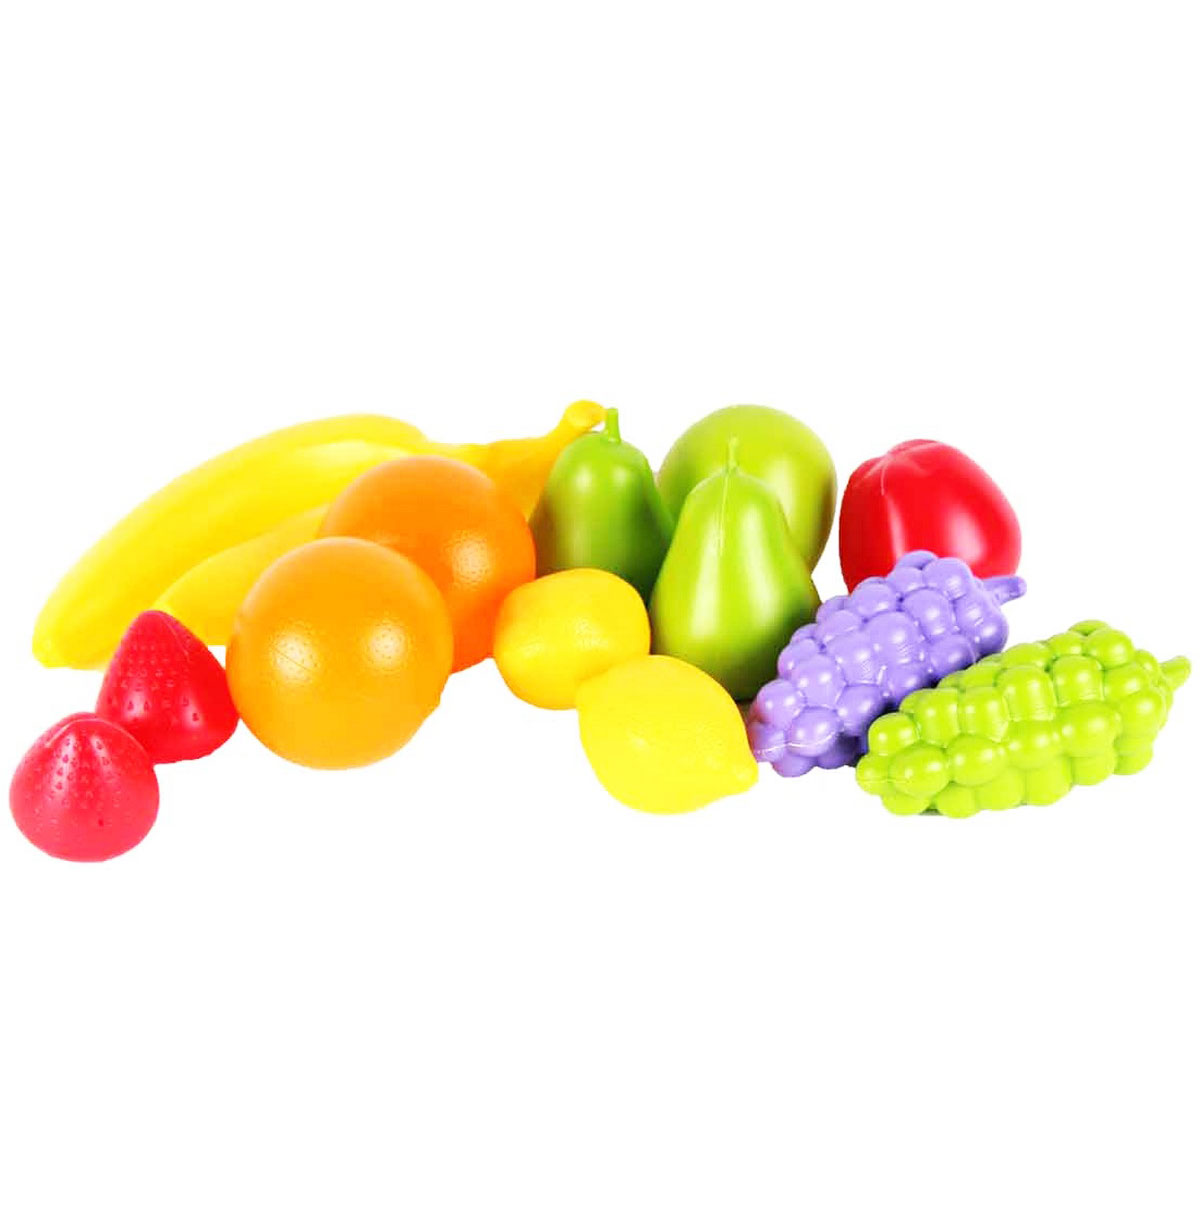 Іграшковий набір фруктів Технок